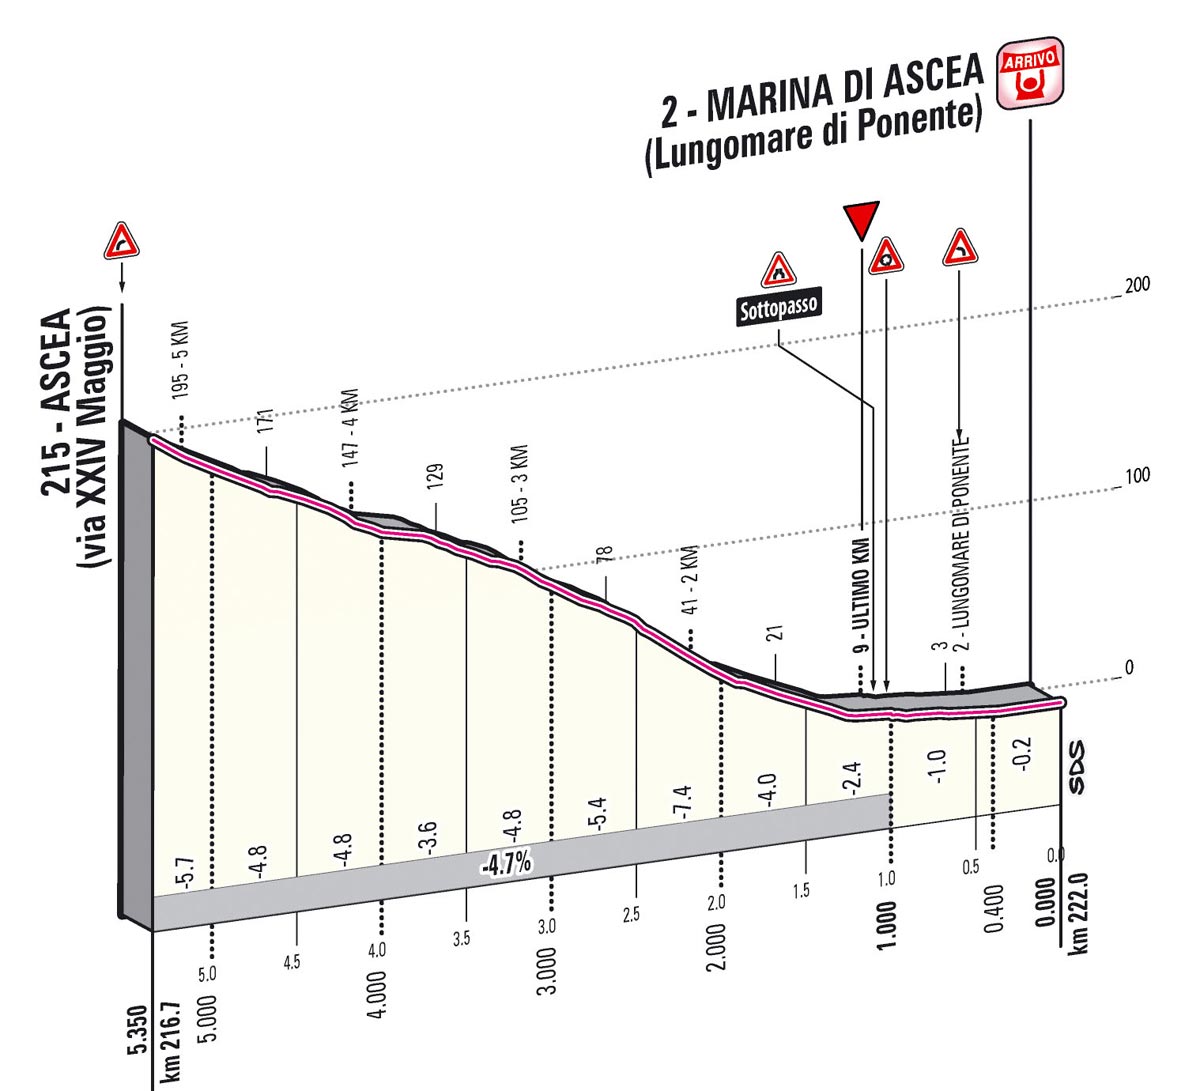 Giro d'Italia 2013 Stage 3 Last kms